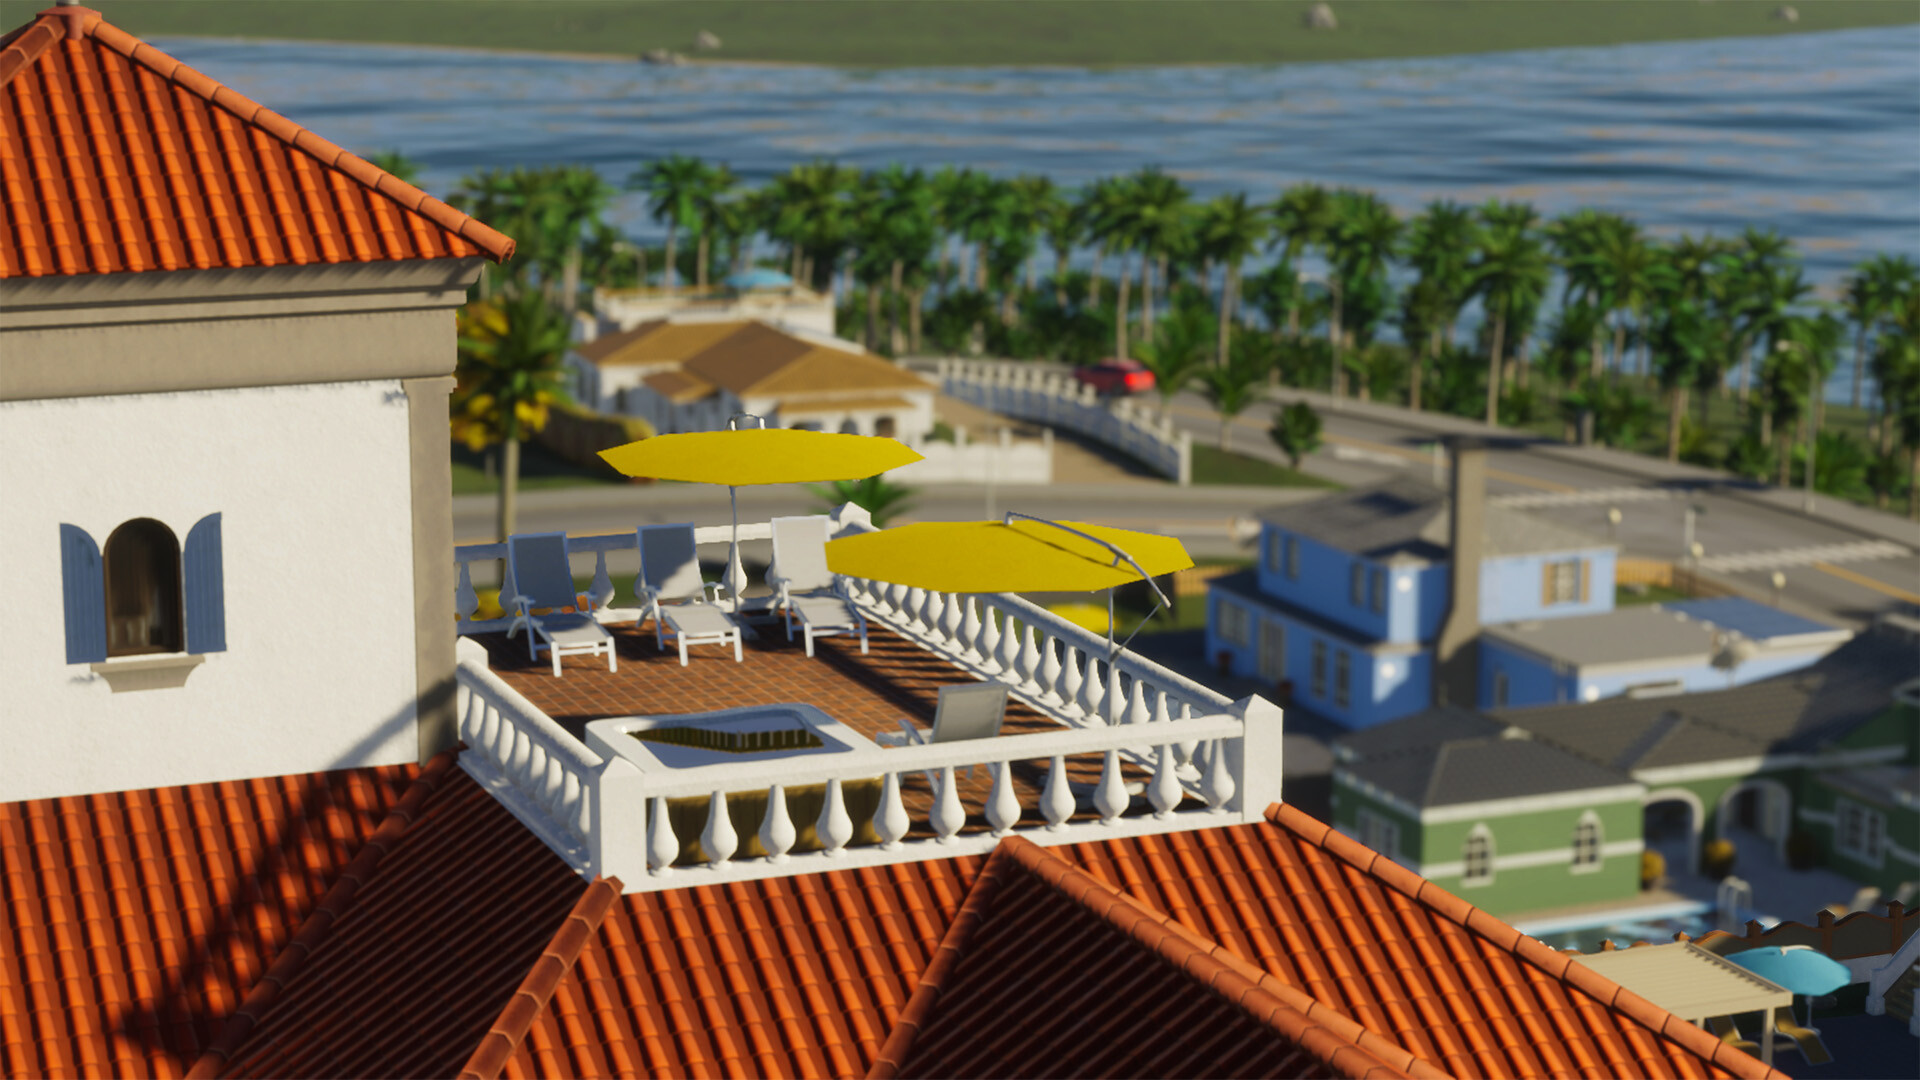 Die Stadtplanungsstrategie Cities: Skylines 2 erhielt eine Reihe von Strandobjekten und In-Game-Tools für Änderungen